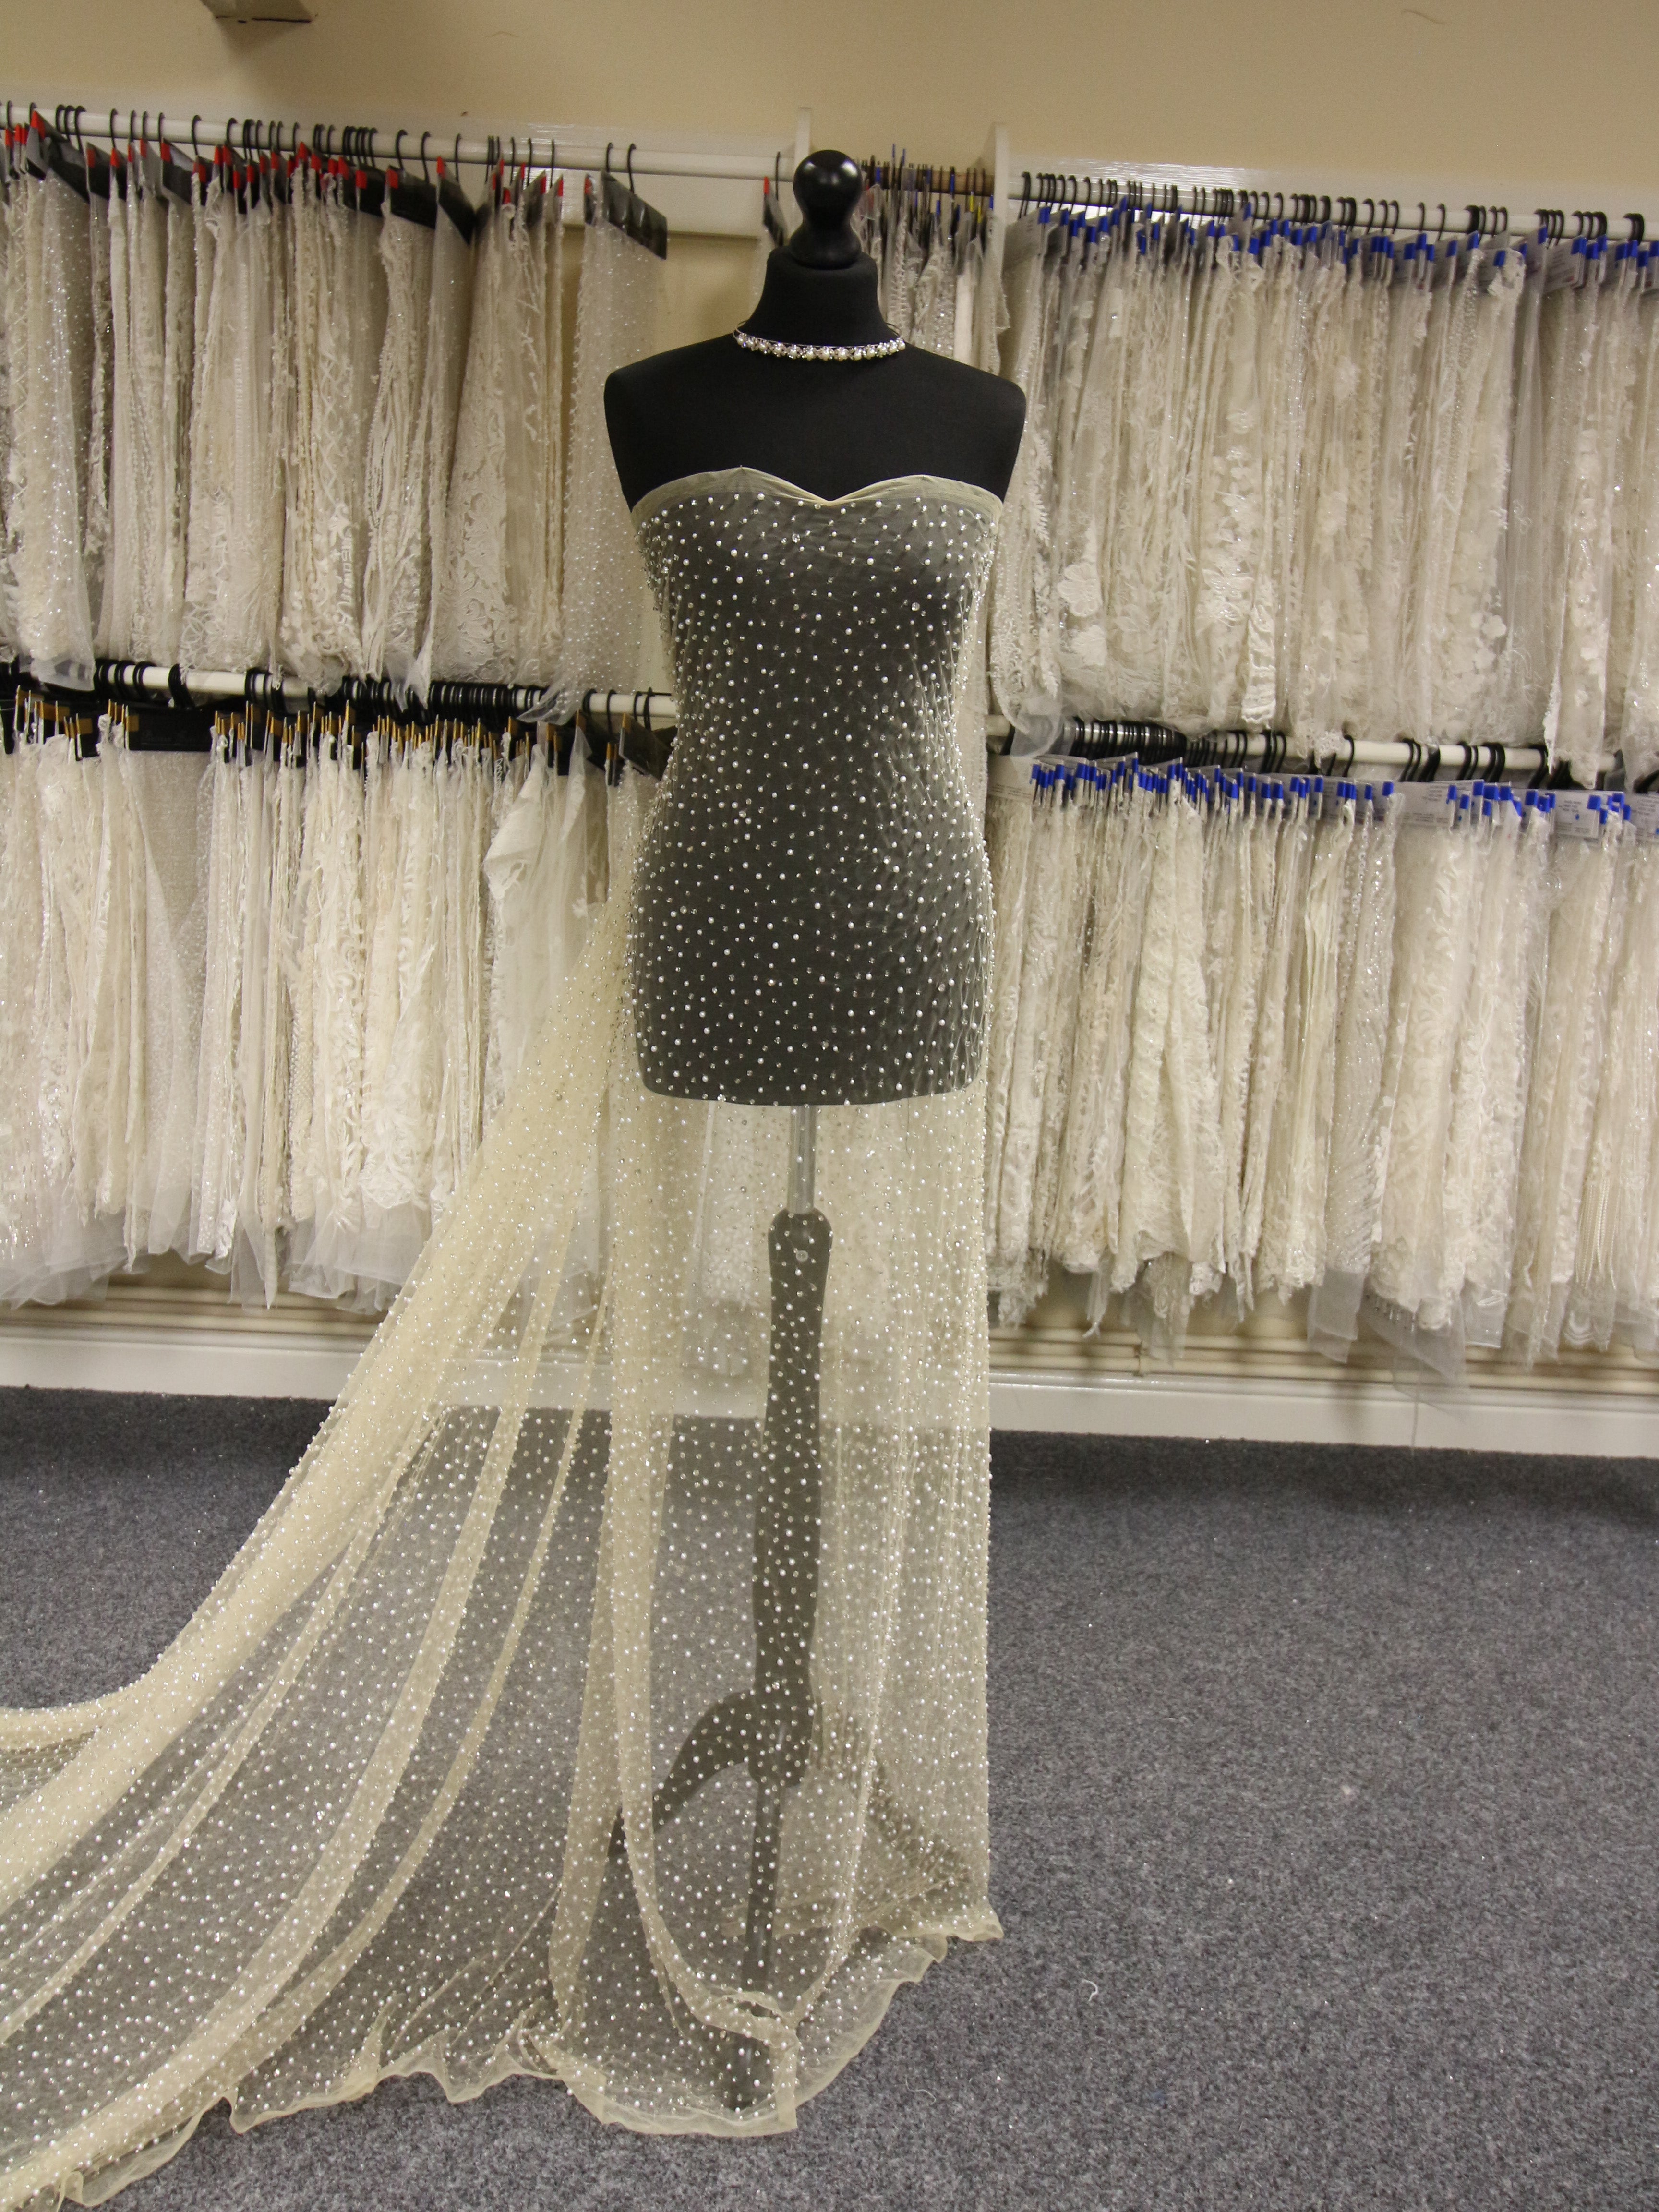 ZELOUF FABRICS Sellen Stretch Slub Ponte | Fabric by The Yard | DIY,  Sewing, Wedding, Bridal, Dress, Dance, Costume, Crafts | 5 Yard